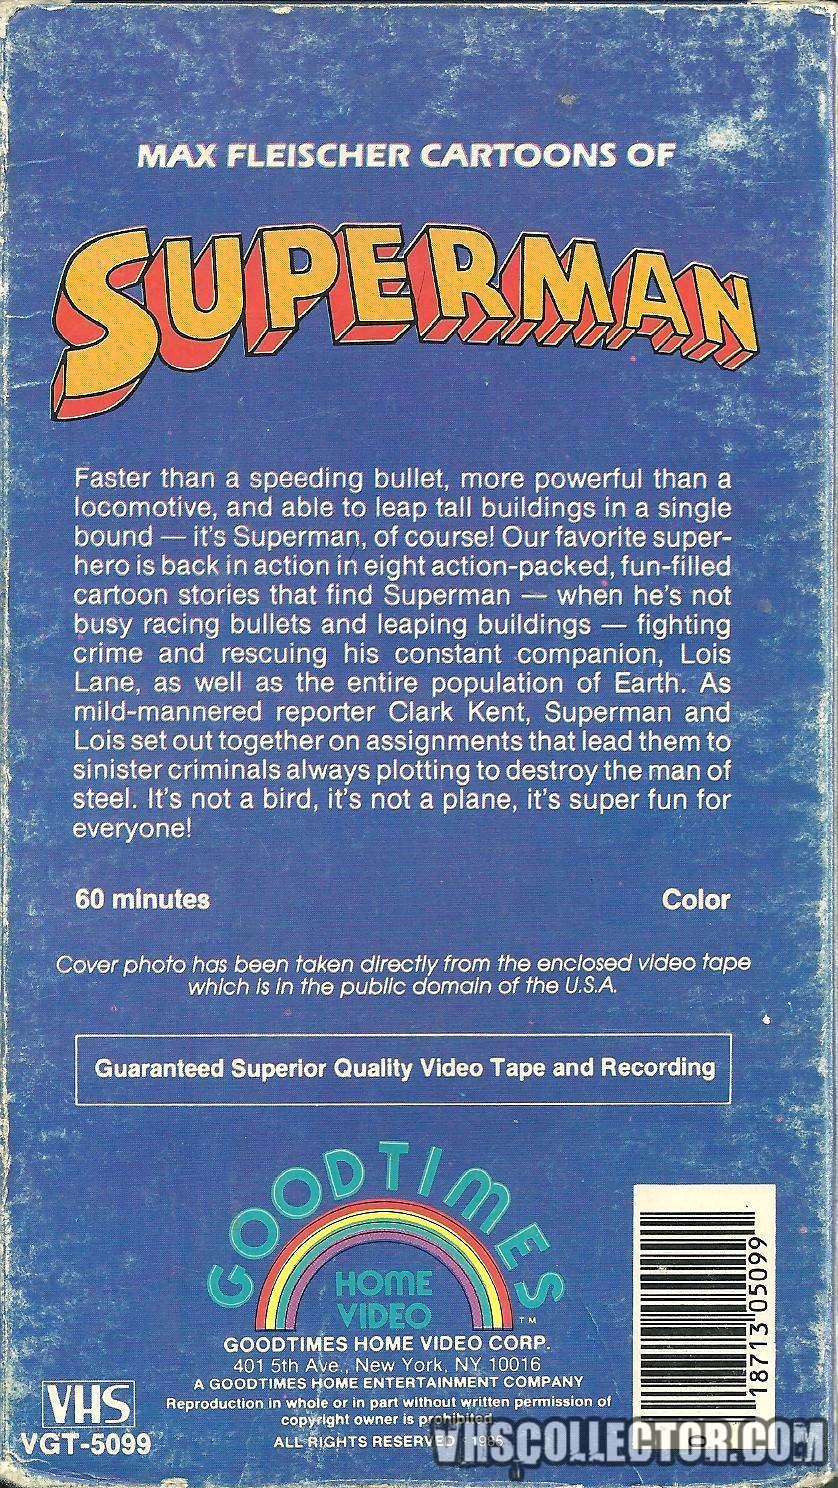 Max Fleischer Cartoons Of Superman | VHSCollector.com